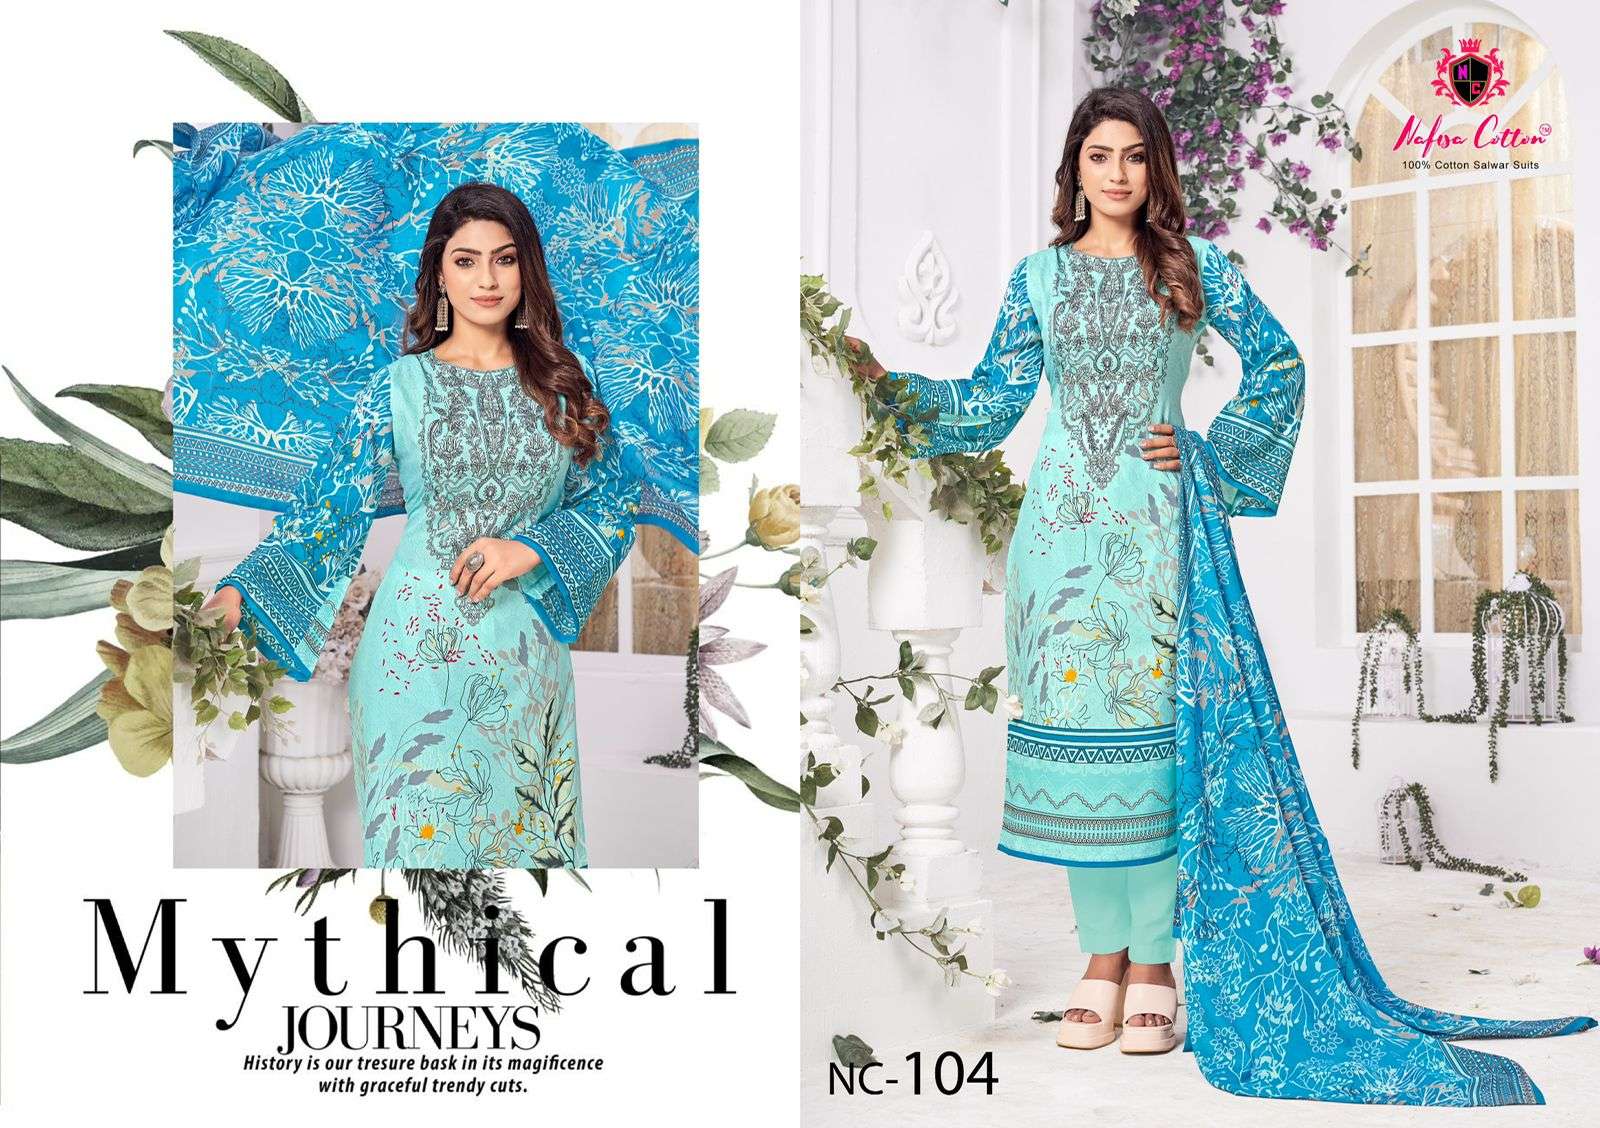 nafisha cotton andaaz karachi suits 1001-1006 series latest pakistani salwar kameez wholesaler surat gujarat